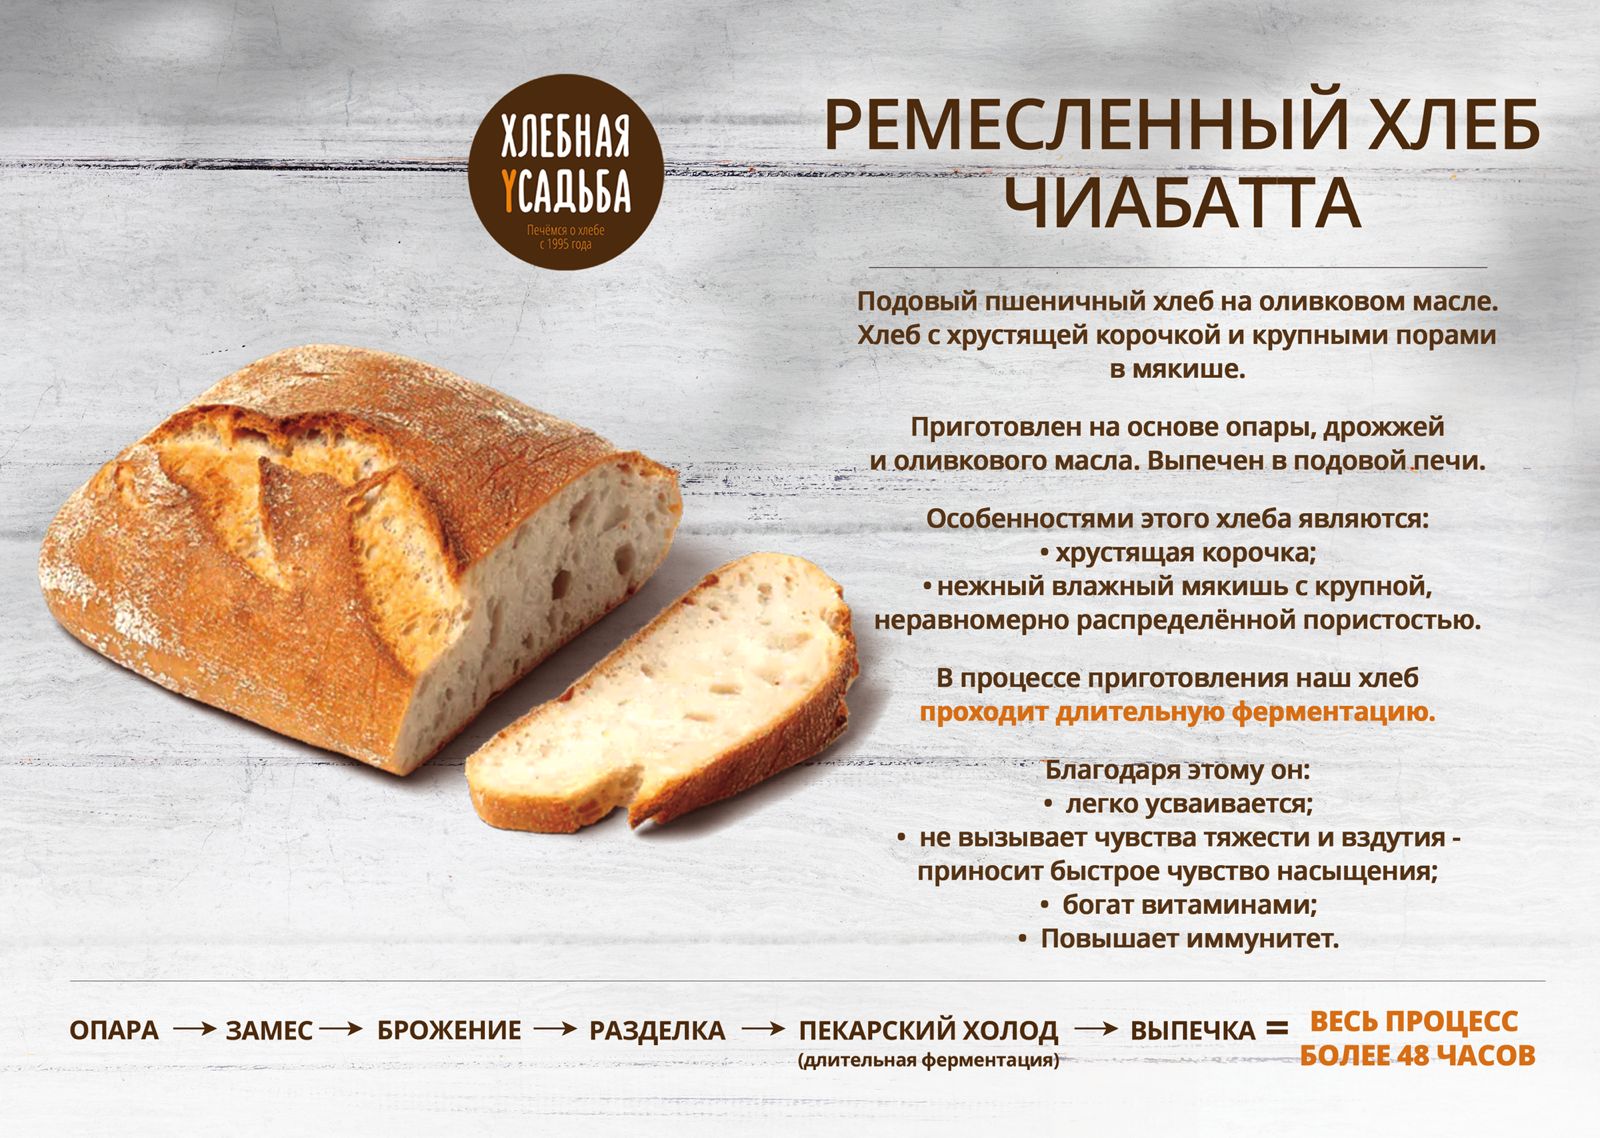 Ремесленный хлеб Чиабатта